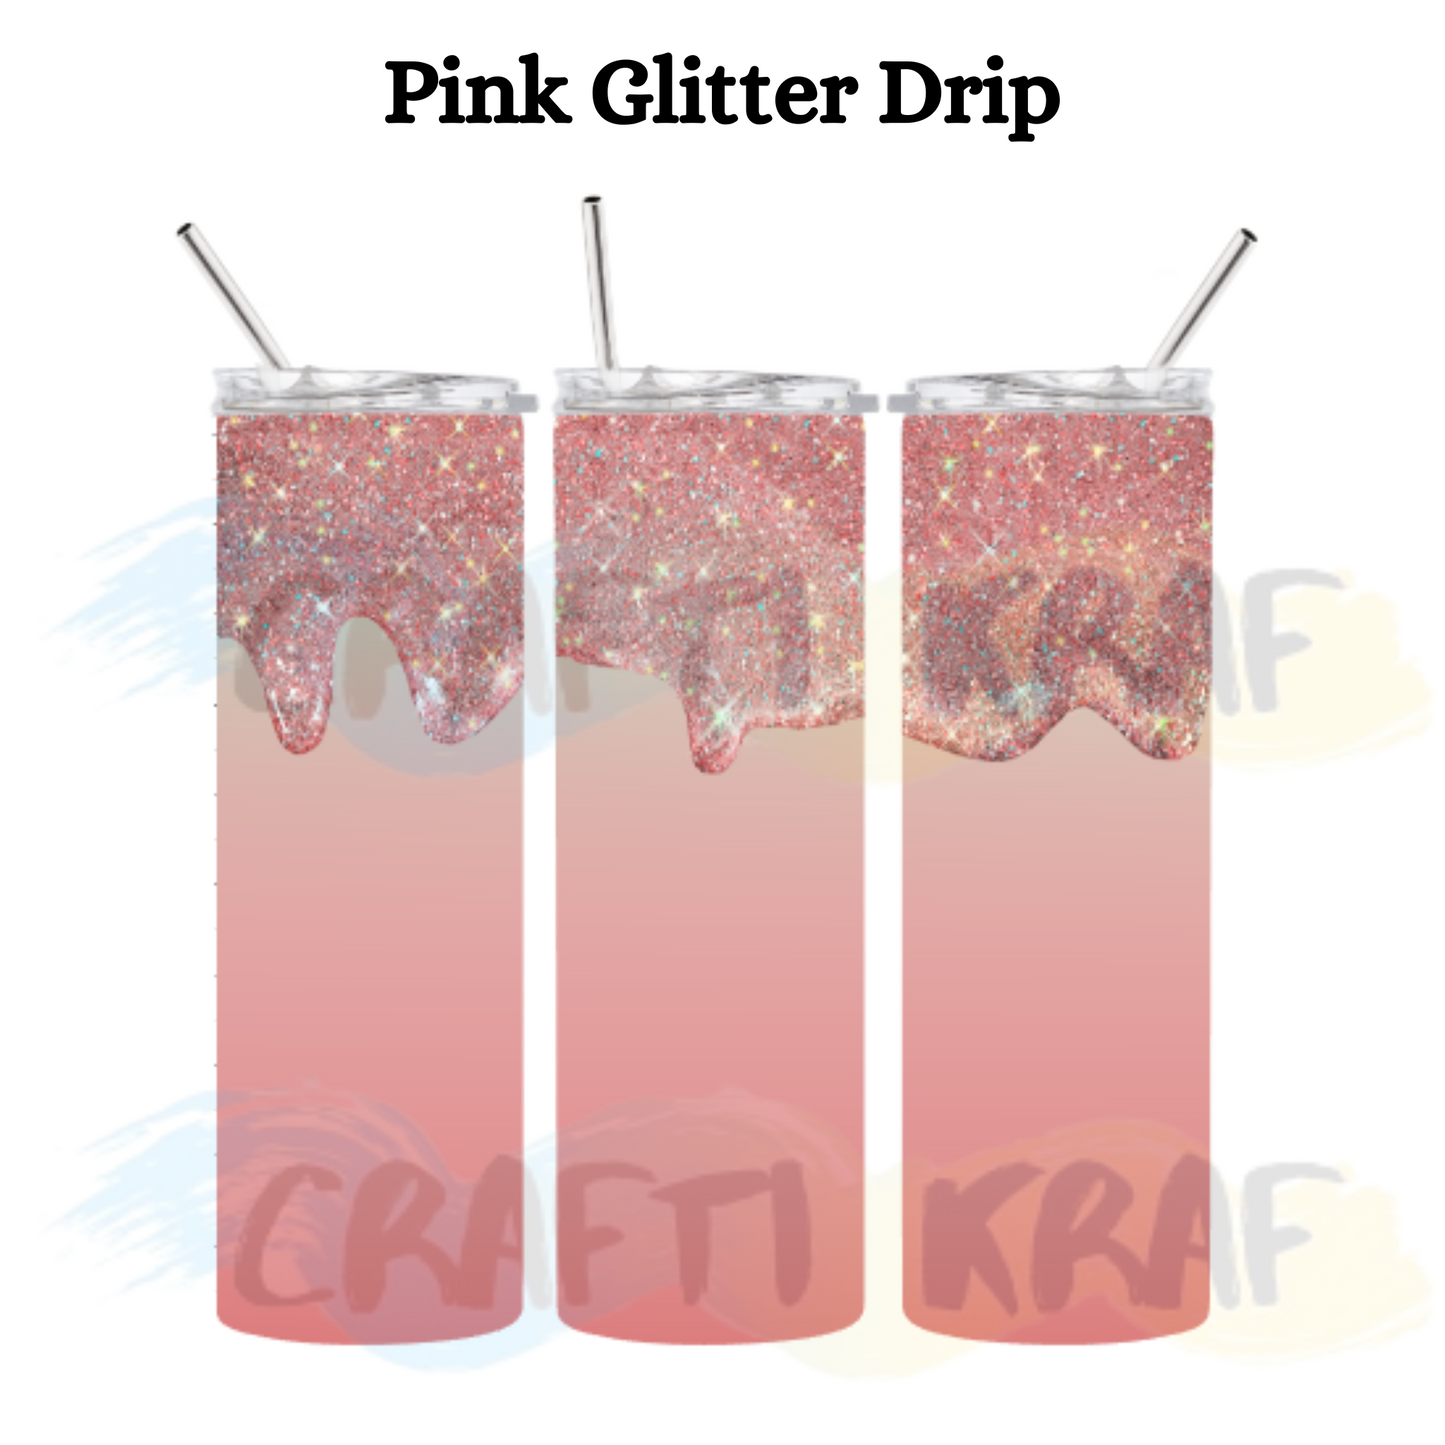 20oz. Skinny Tumbler - Pink glitter drip